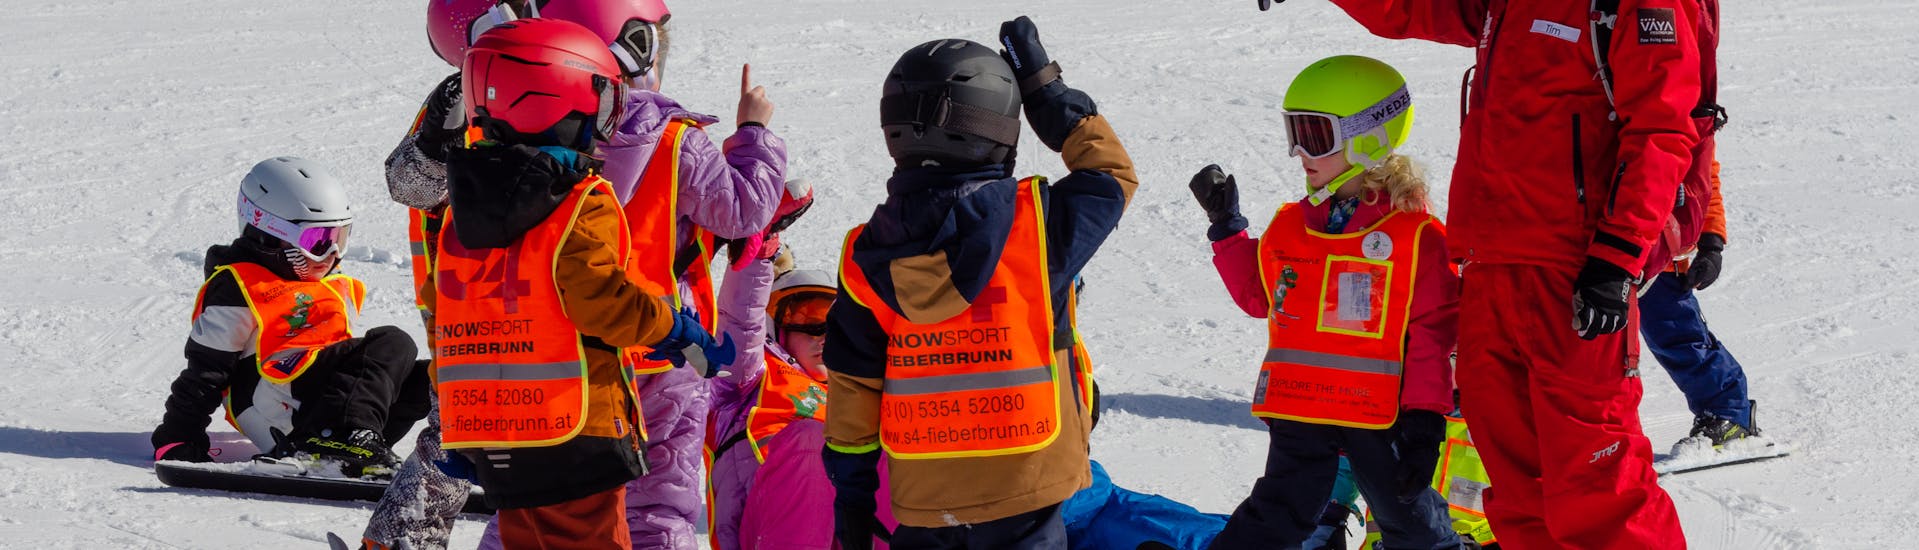 Cours de ski pour enfants de tous niveaux (5-14 ans) avec S4 Snowsport Fieberbrunn.